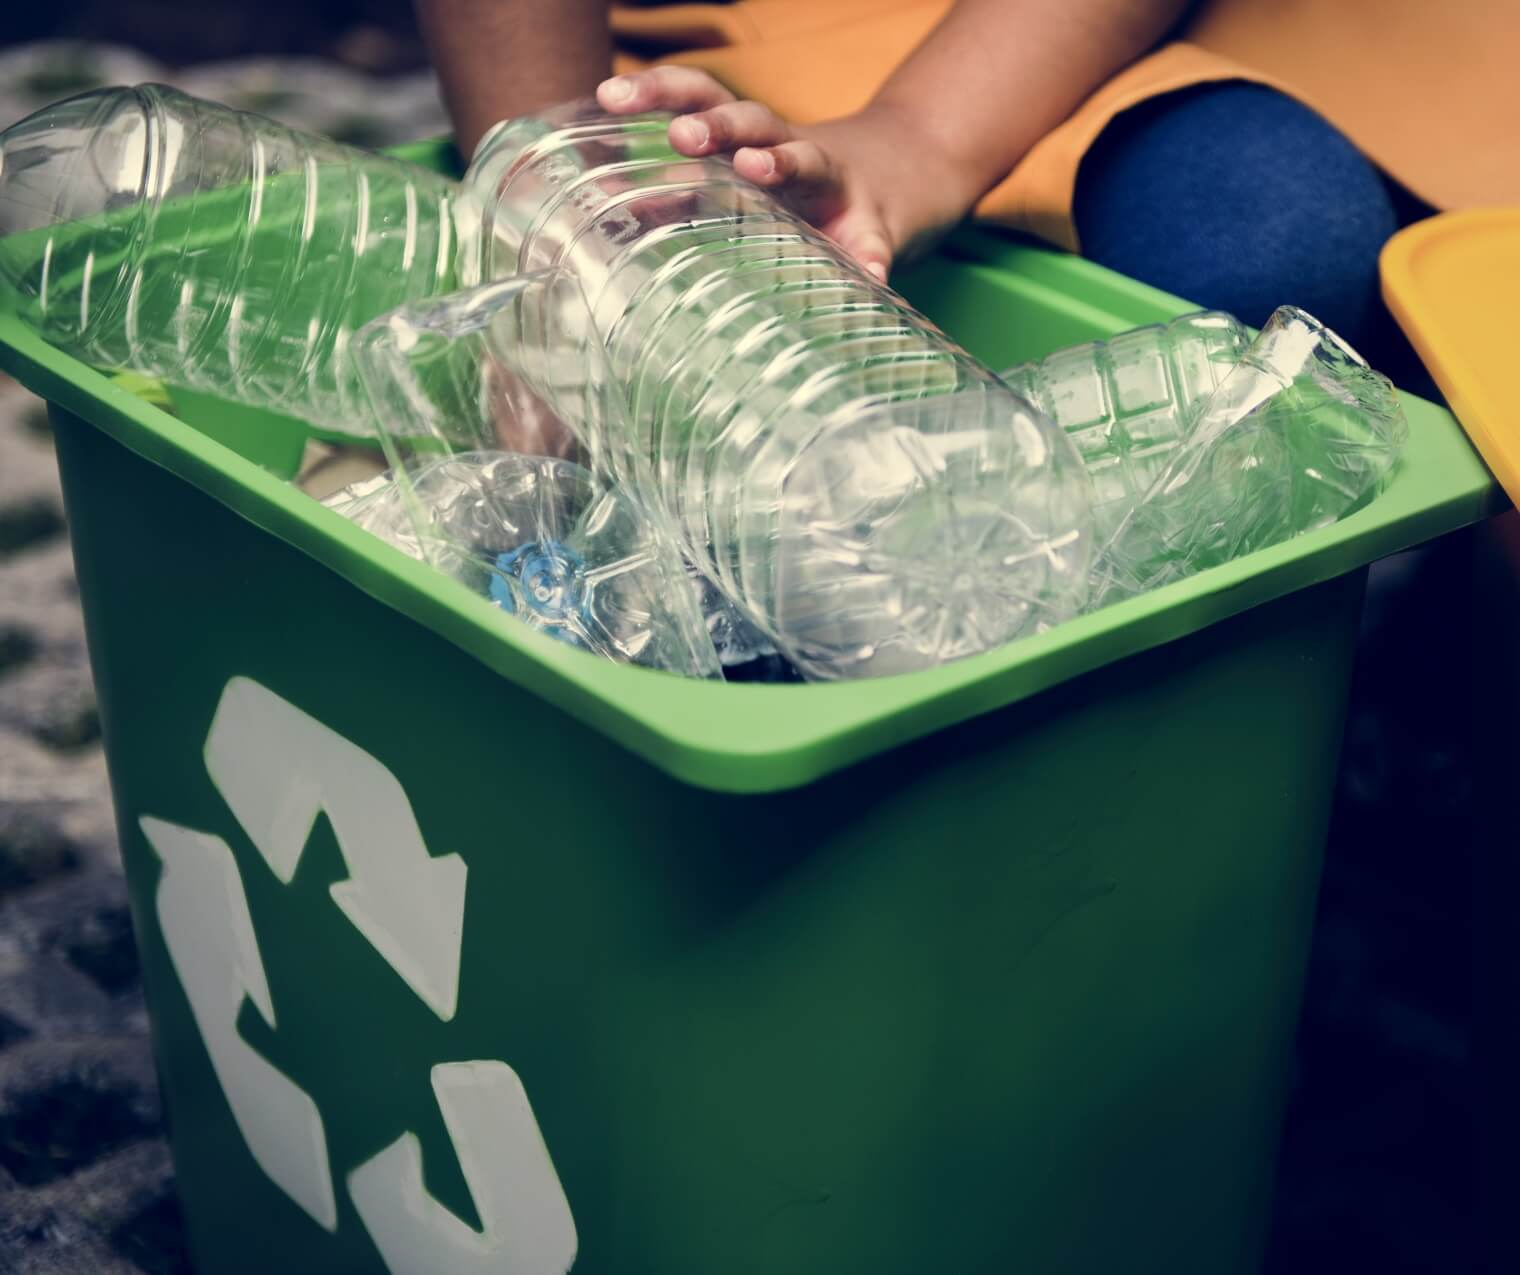 Plastic bottles in the recycling bin